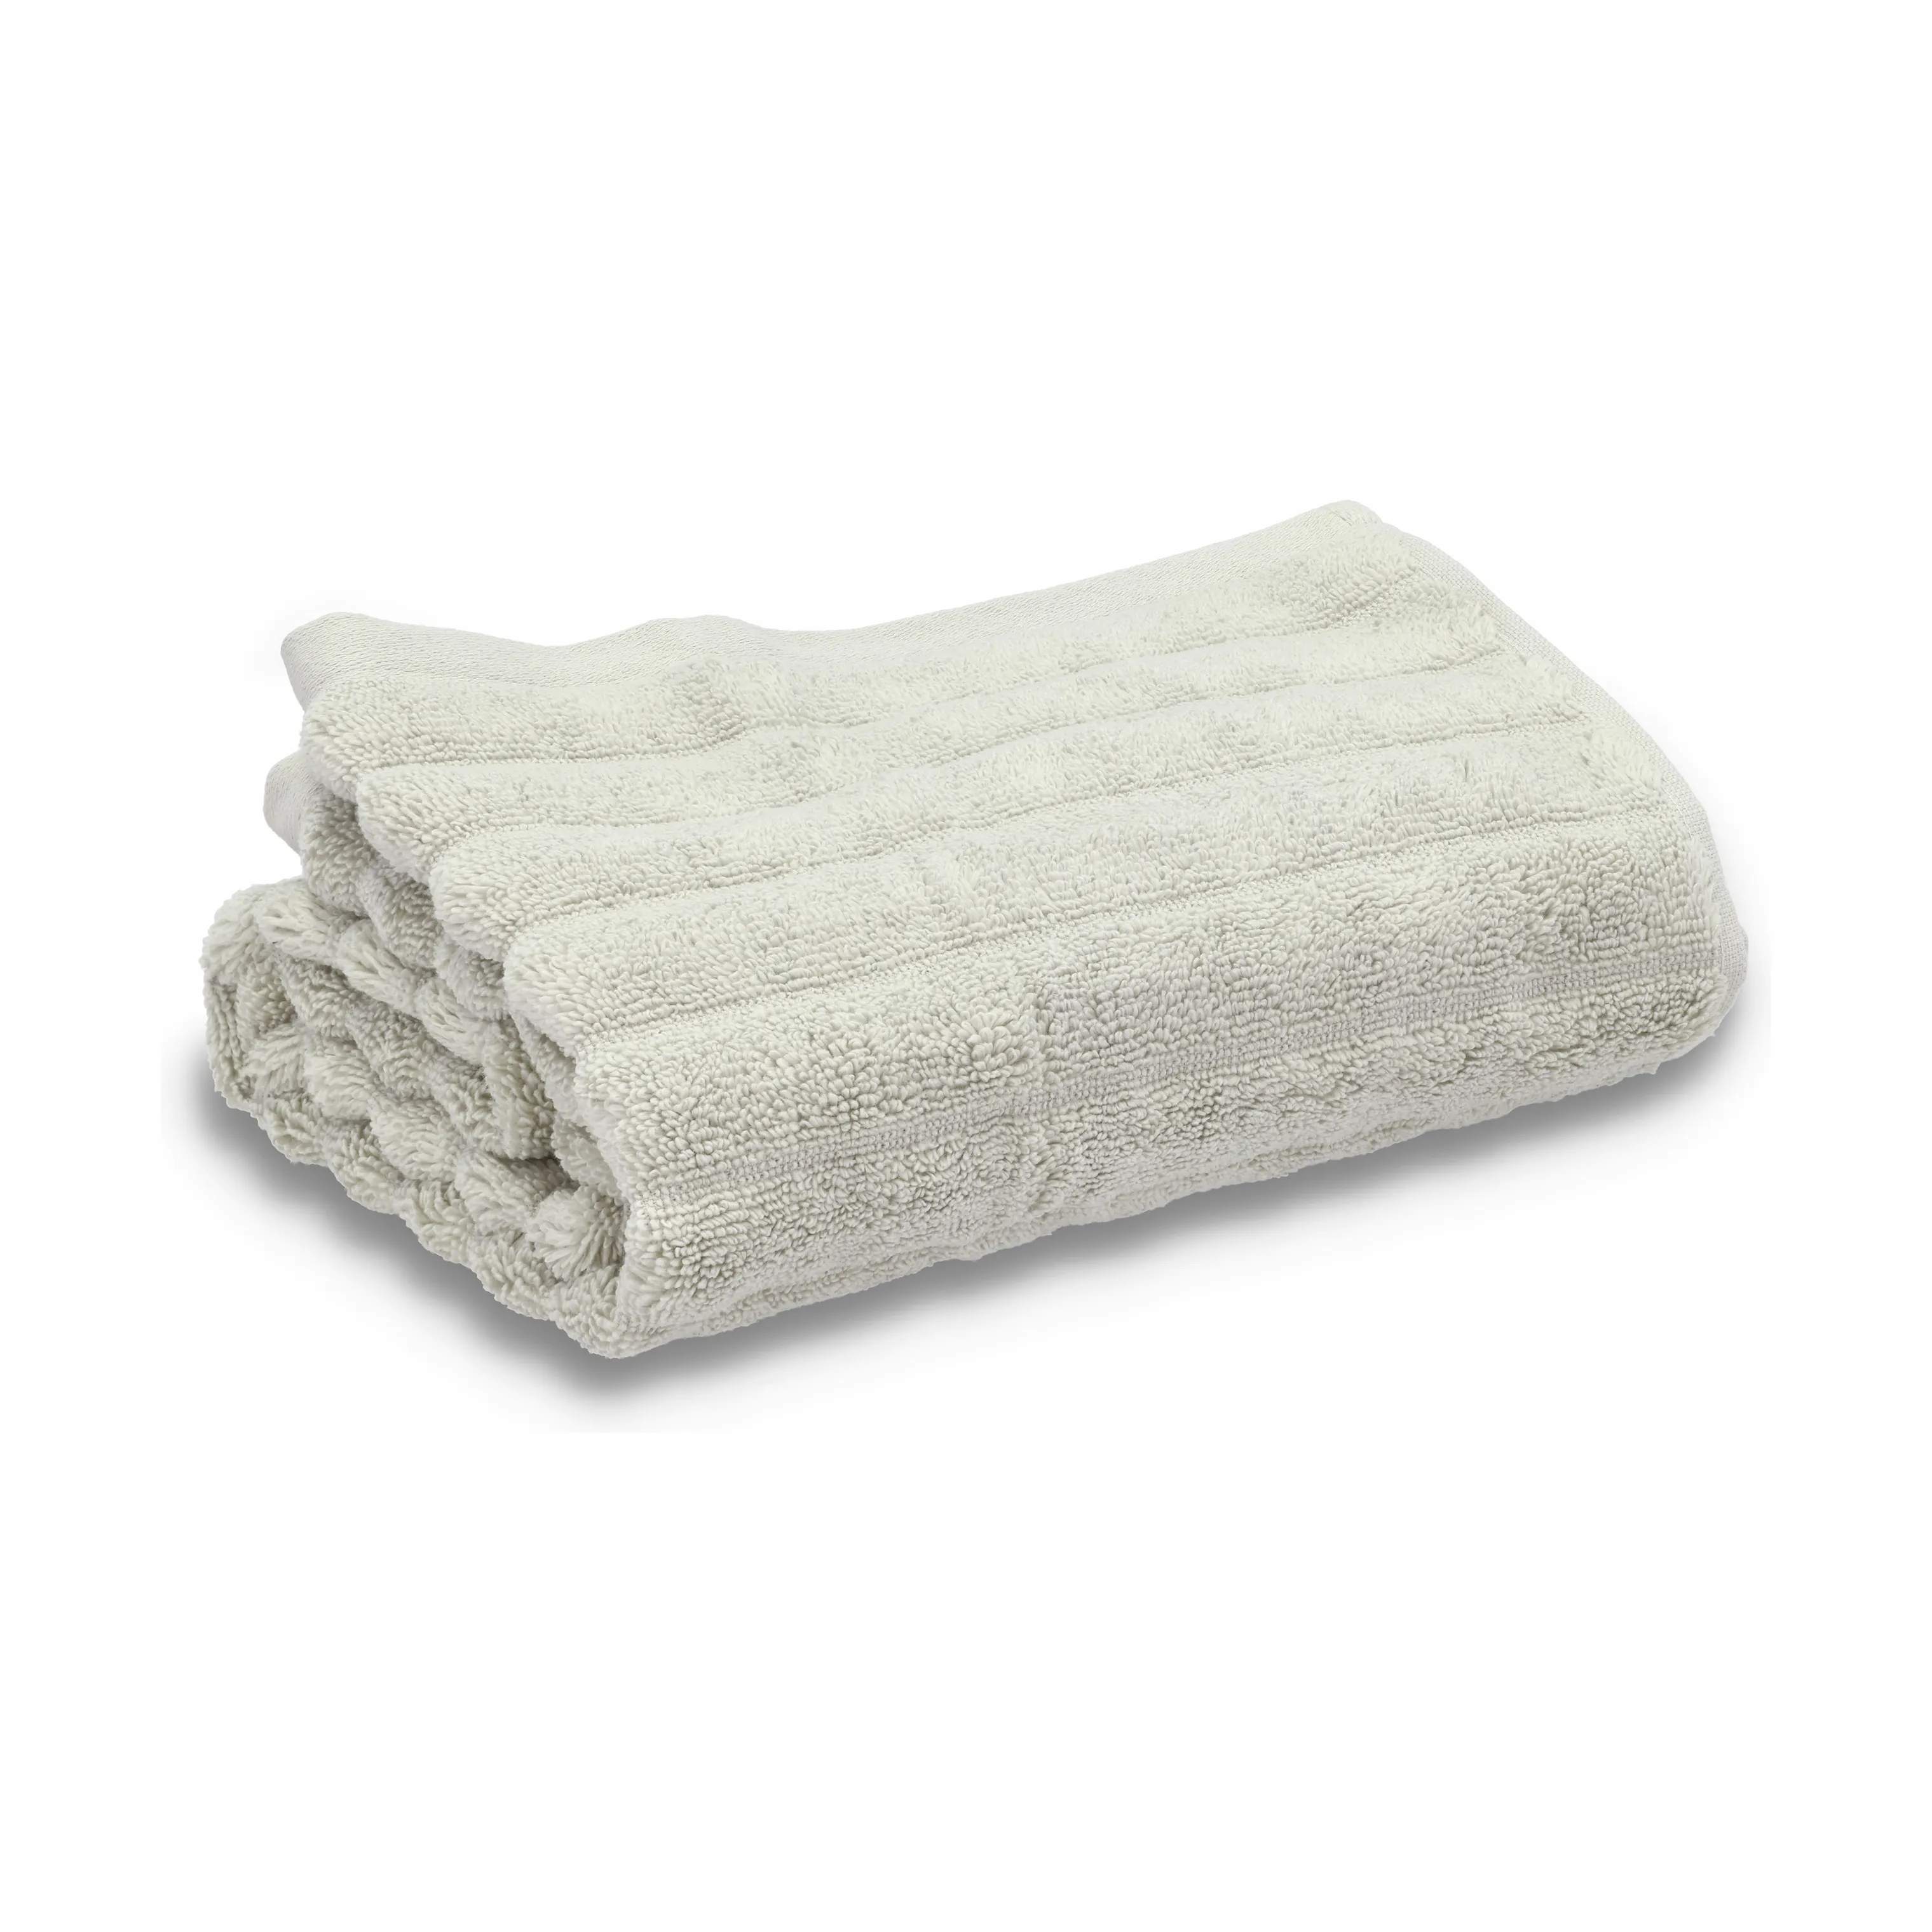 Inu Håndklæde, soft grey, large